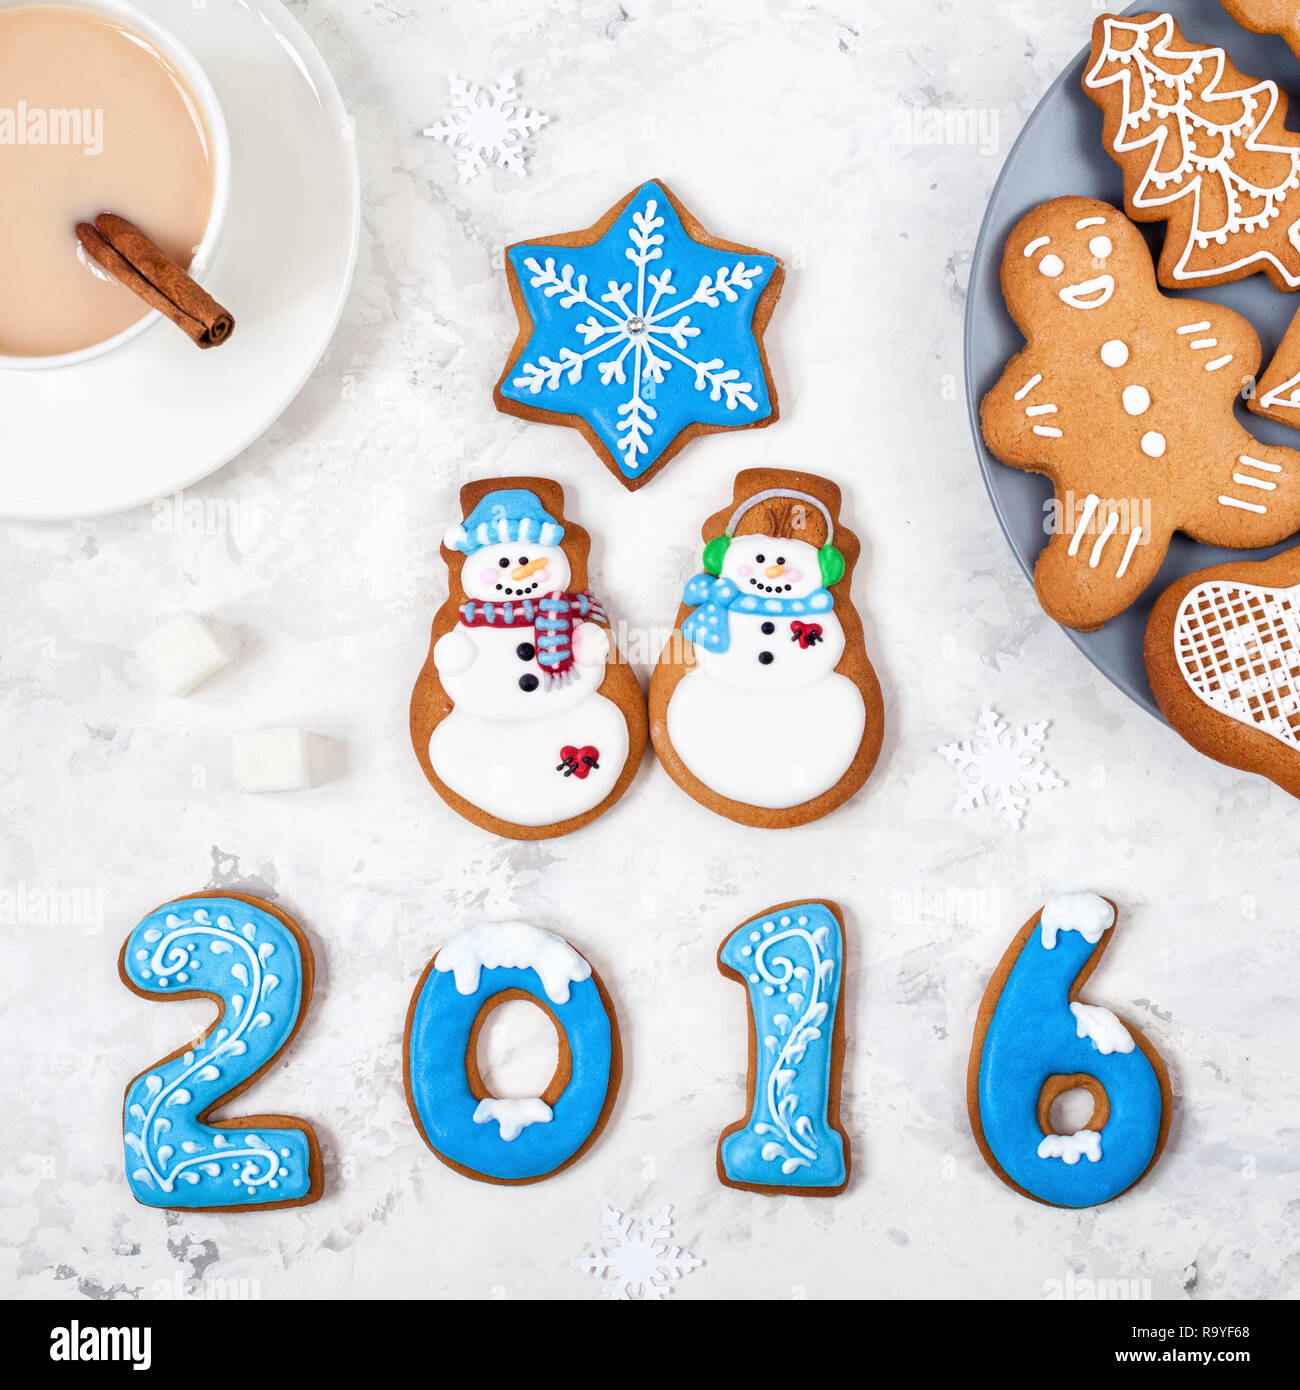 L'année 2016 de l'épice, les bonshommes et différents pains près de tasse de café sur fond blanc Banque D'Images